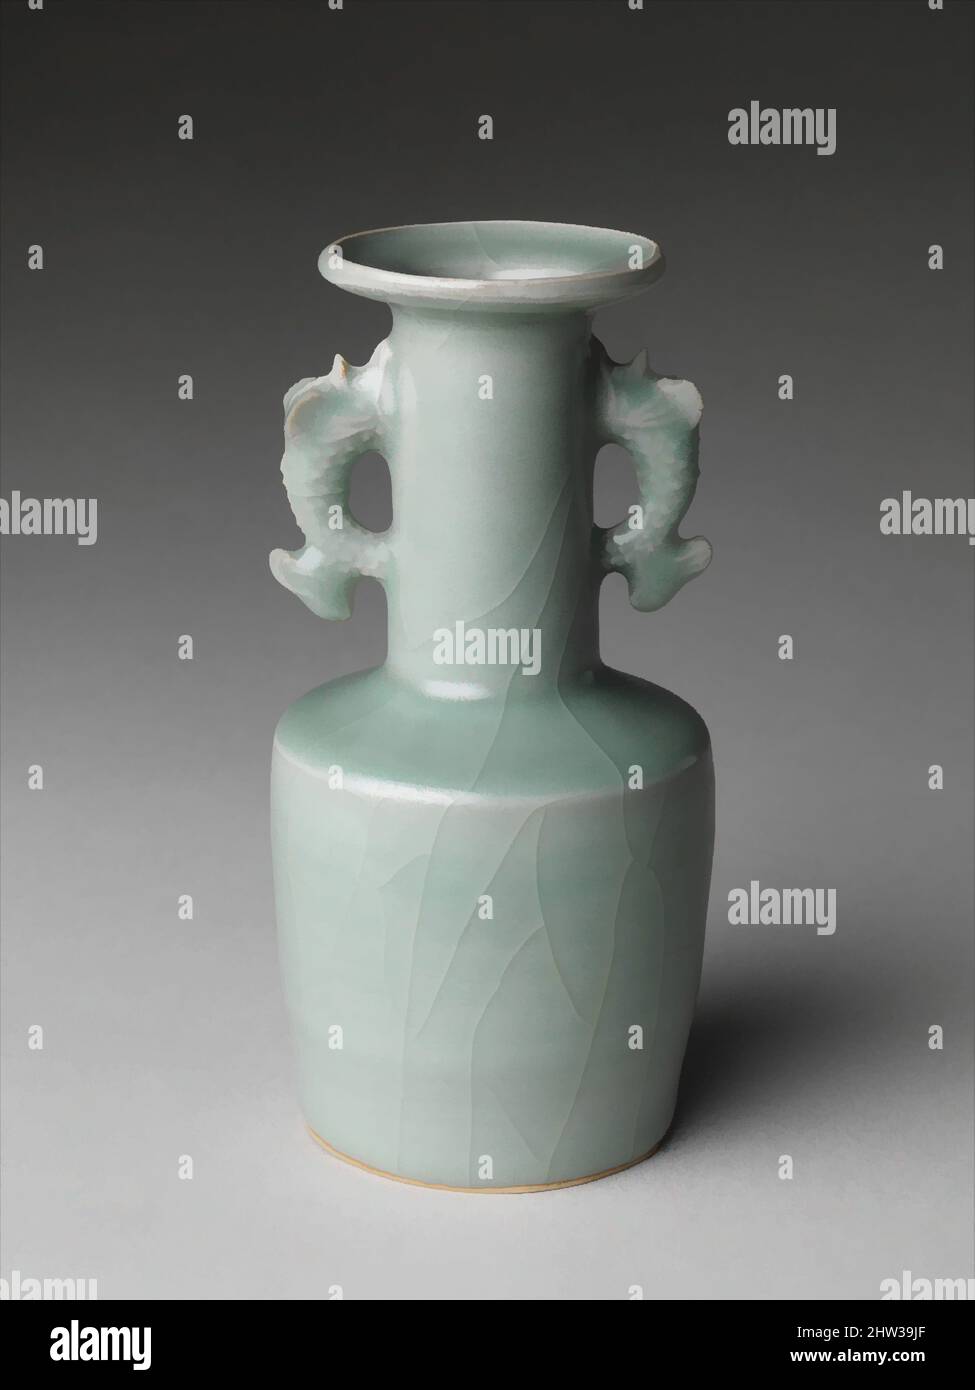 Von 龍泉窯雙耳瓶 inspirierte Kunst, Vase mit Handgriffen aus dem Dessousstil, Southern Song Dynastie (1127–1279), 12.–13. Jahrhundert, China, Porzellan mit Reliefdekor unter Seladonglasur (Longquan-Geschirr), H. 6 3/4 Zoll (17,1 cm), Keramik, Vasen dieser Art waren besonders beliebt in Japan, wo sie, Classic Works modernisiert von Artotop mit einem Schuss Moderne. Formen, Farbe und Wert, auffällige visuelle Wirkung auf Kunst. Emotionen durch Freiheit von Kunstwerken auf zeitgemäße Weise. Eine zeitlose Botschaft, die eine wild kreative neue Richtung verfolgt. Künstler, die sich dem digitalen Medium zuwenden und die Artotop NFT erschaffen Stockfoto